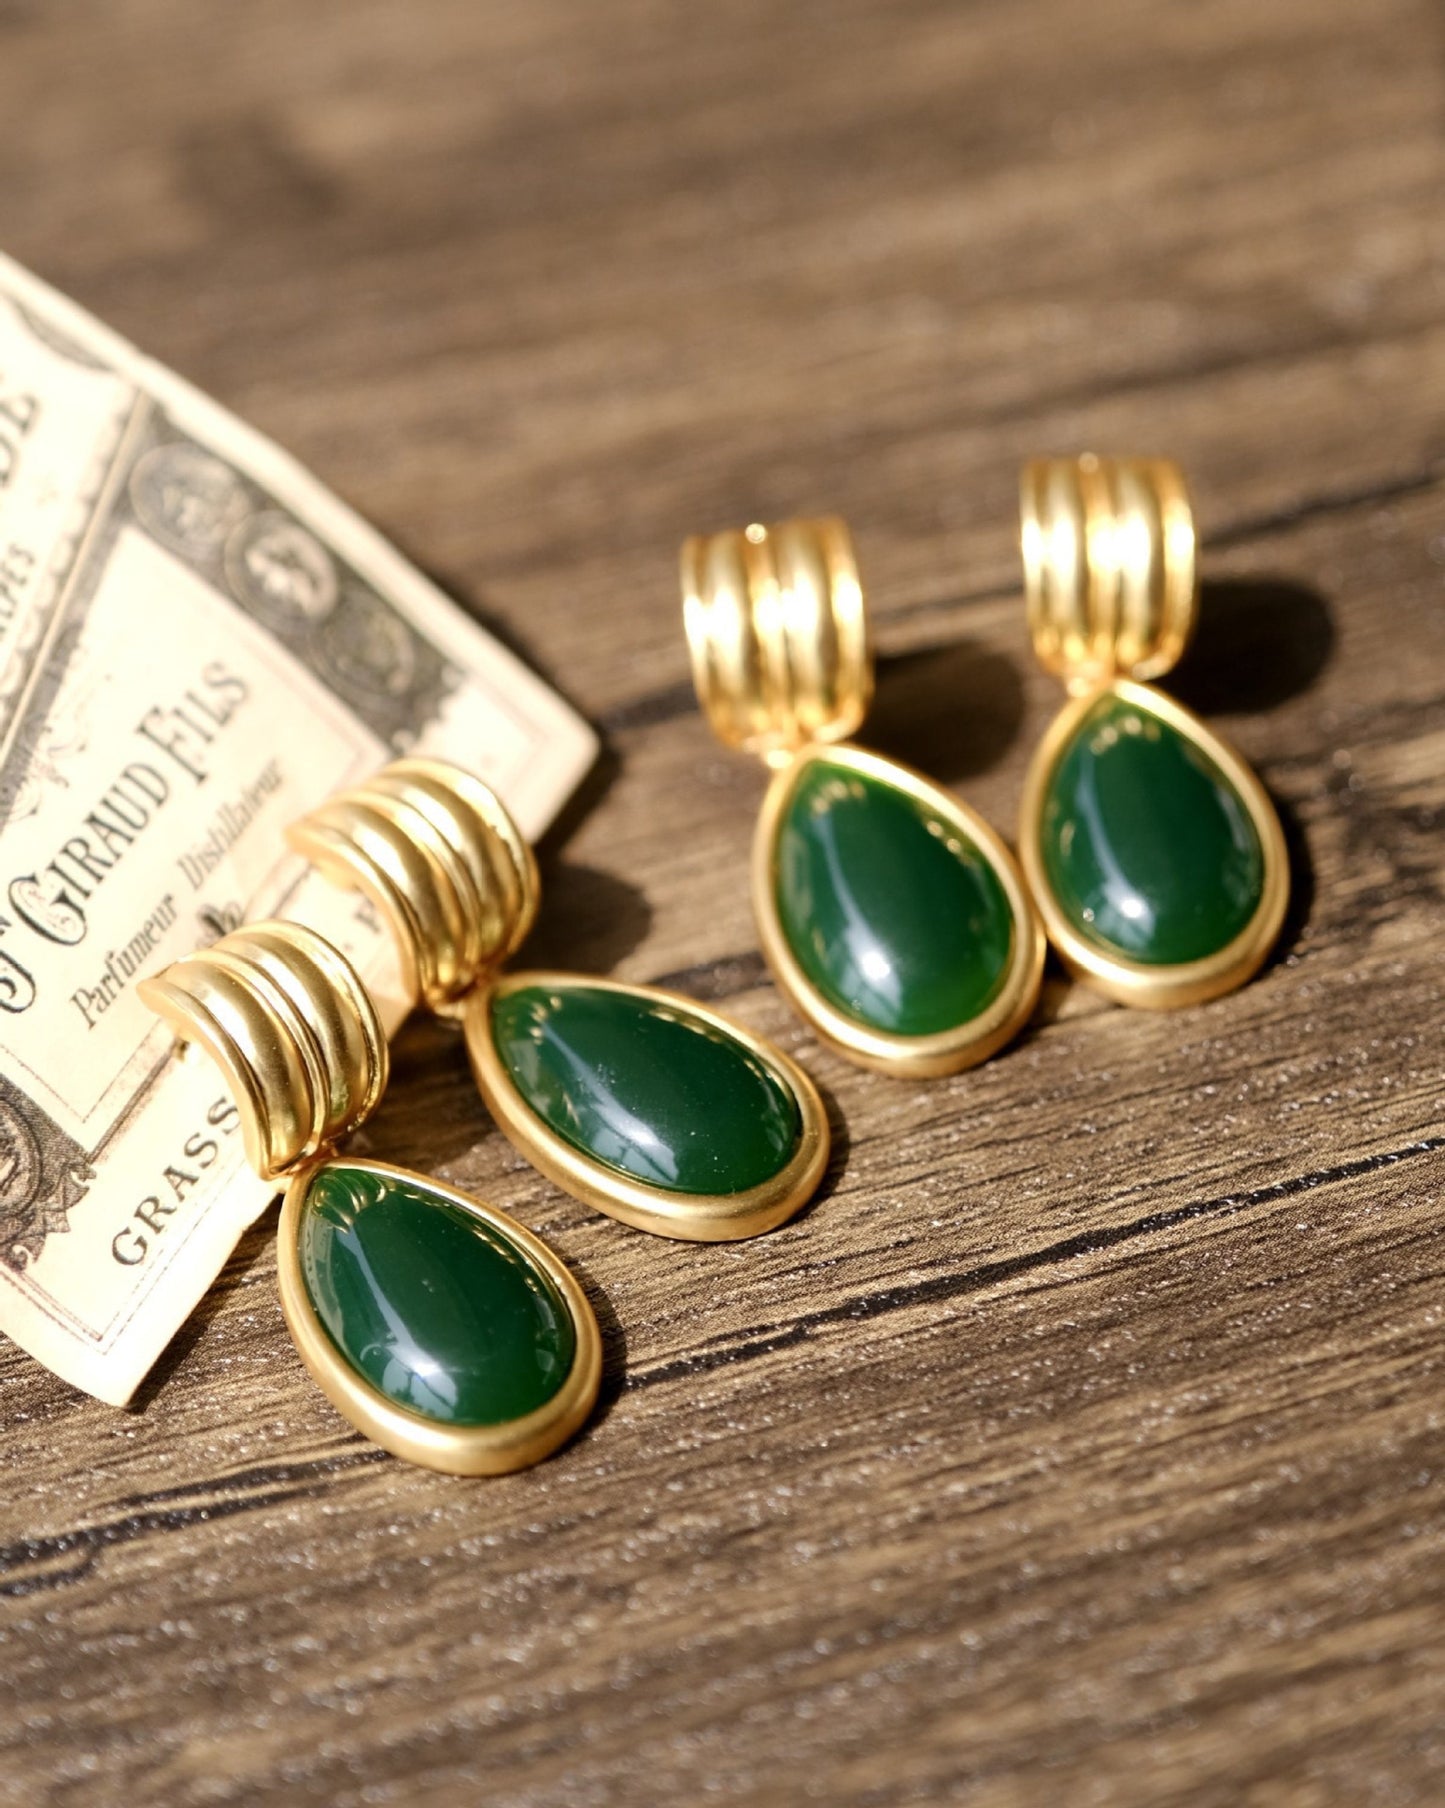 Emerald Teardrop Earrings, Emerald Green Earrings, Vintage Gold Earrings, Antique Style Earrings, 90s Retro Earrings, Wedding Jewelry Gifts